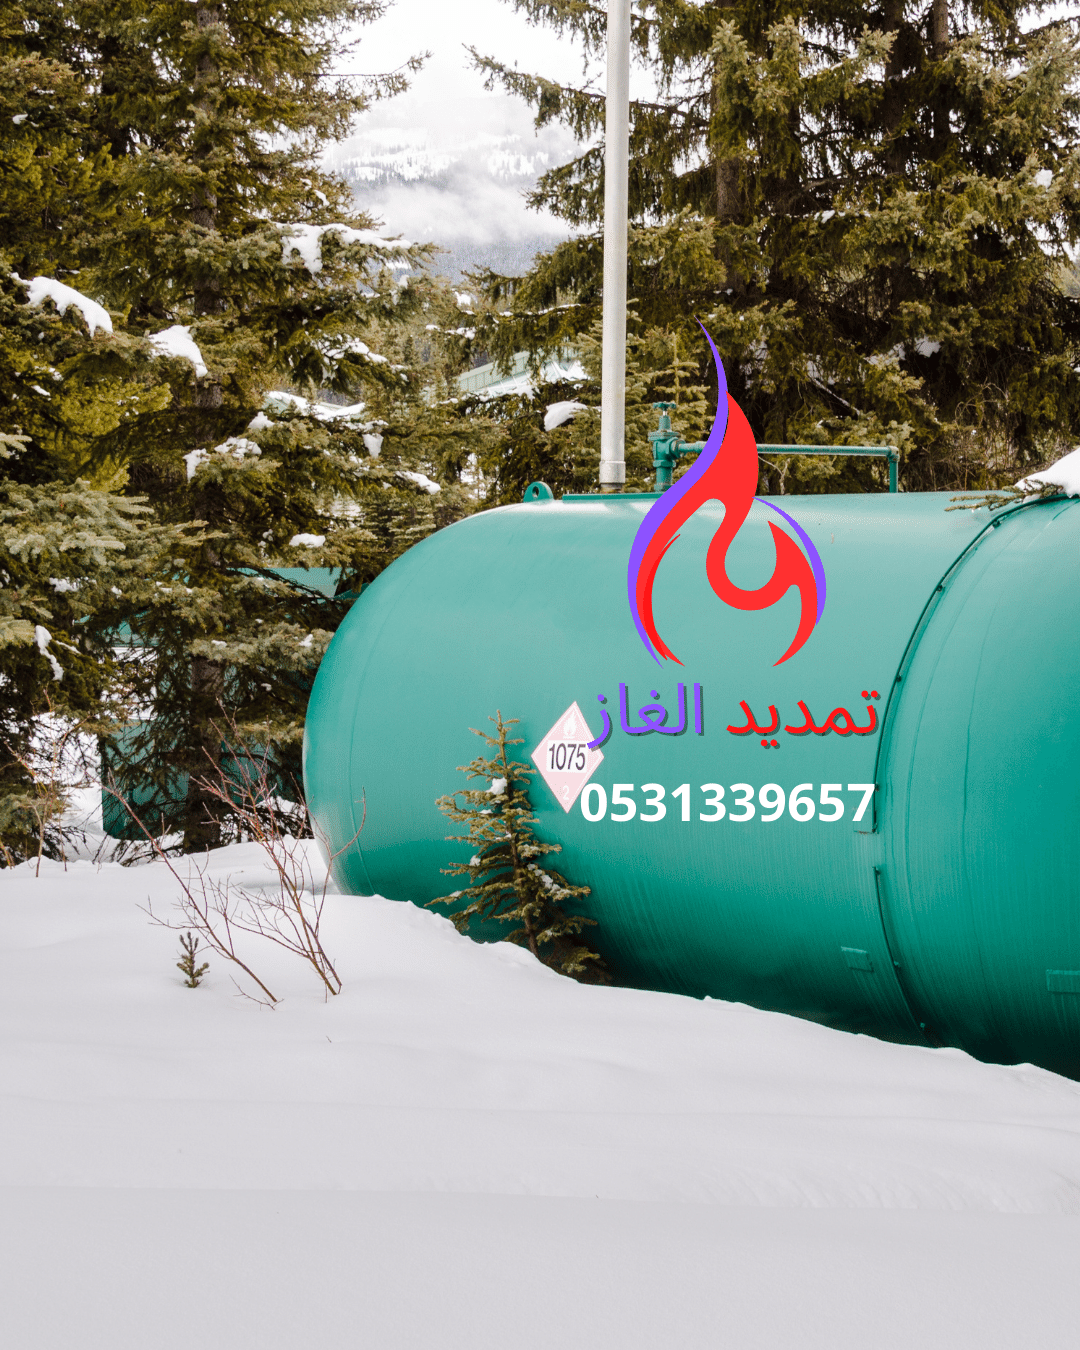 تركيب وصيانة خزانات (اسطوانات) الغاز المركزي  المدفون وفي الحوش بمكة جدة الرياض والمدينة المنورة شركة امداد الغاز المركزي